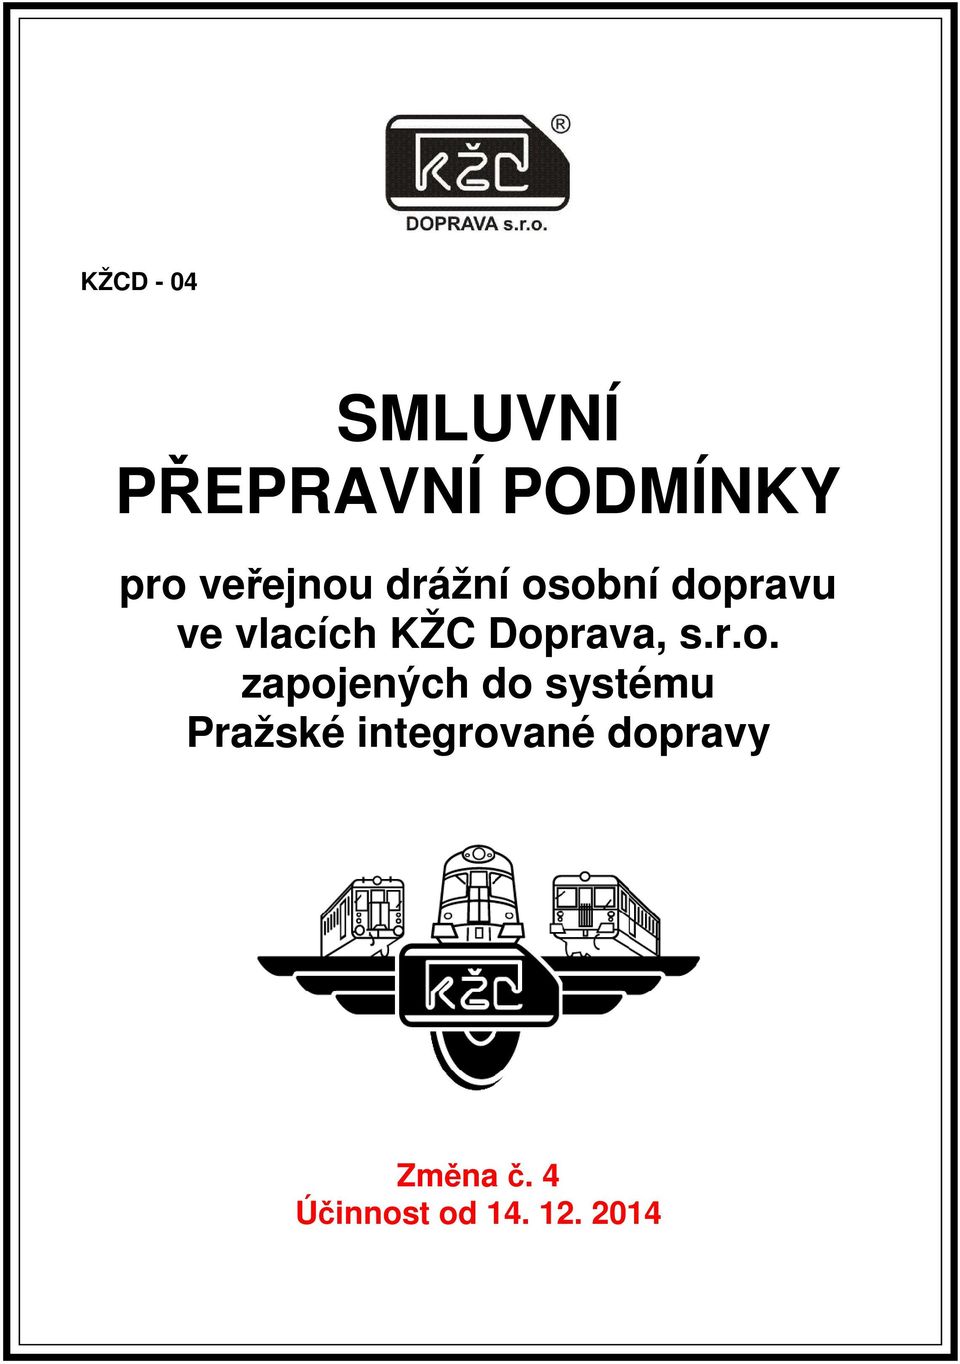 Doprava, s.r.o. zapojených do systému Pražské